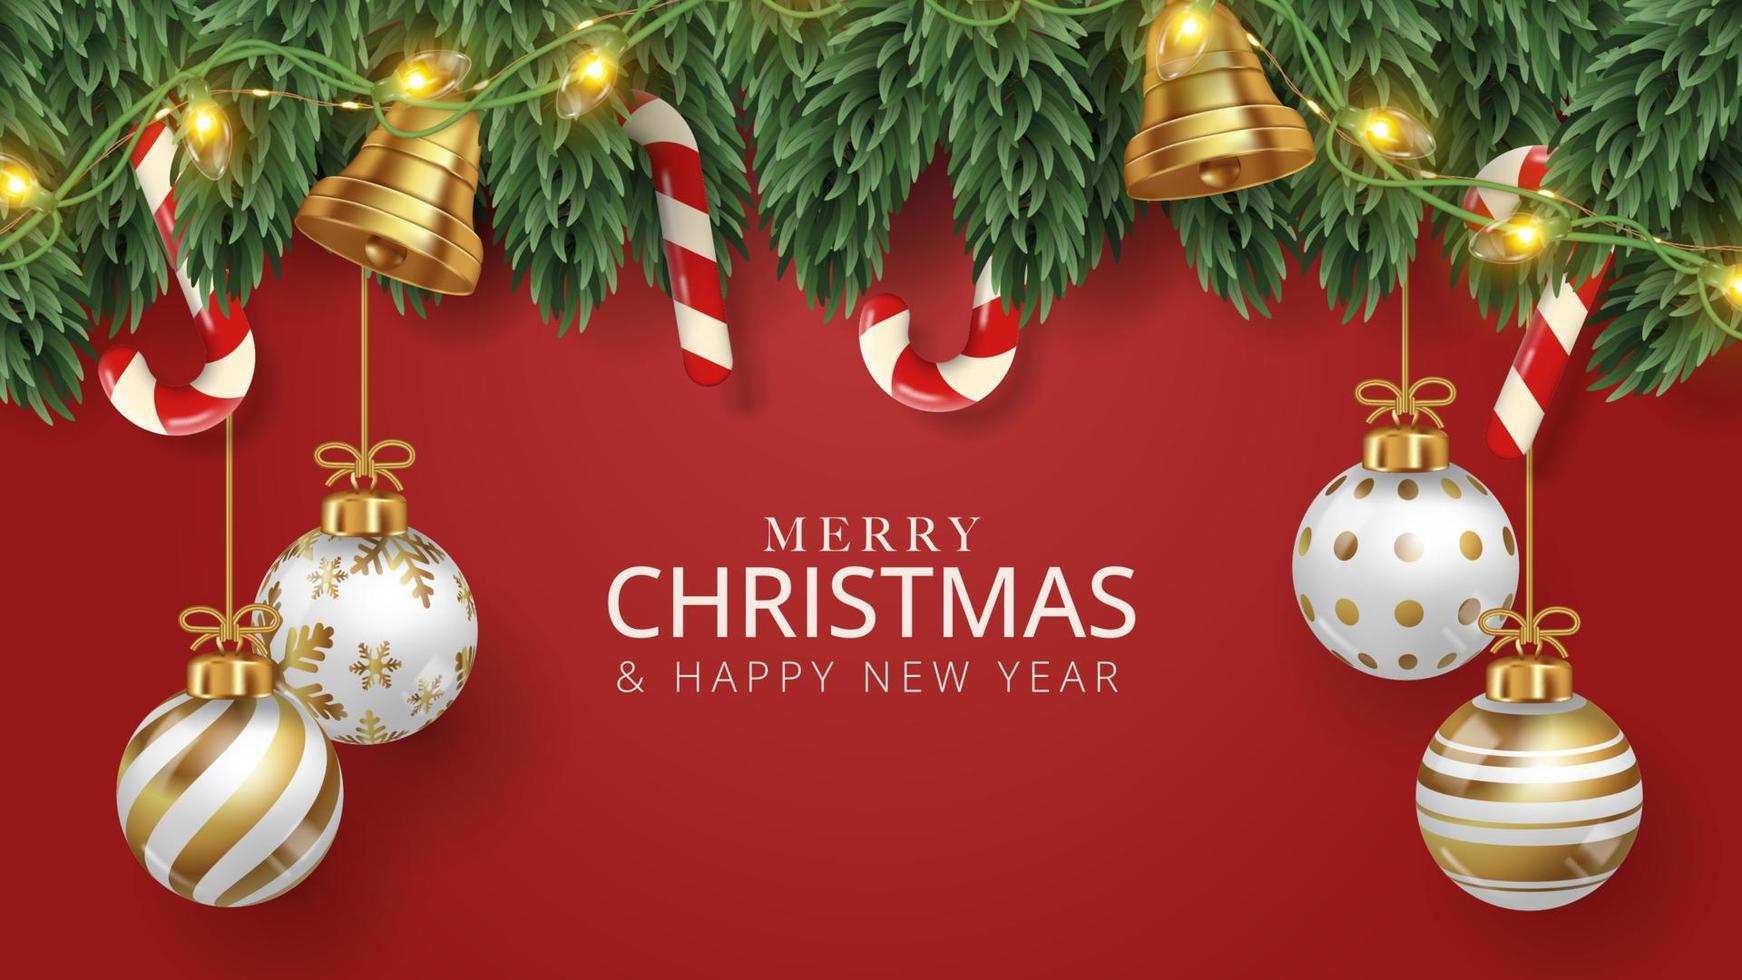 glad jul affisch bakgrund med jul träd gren, jul bollar, godis och klockor. vektor illustration